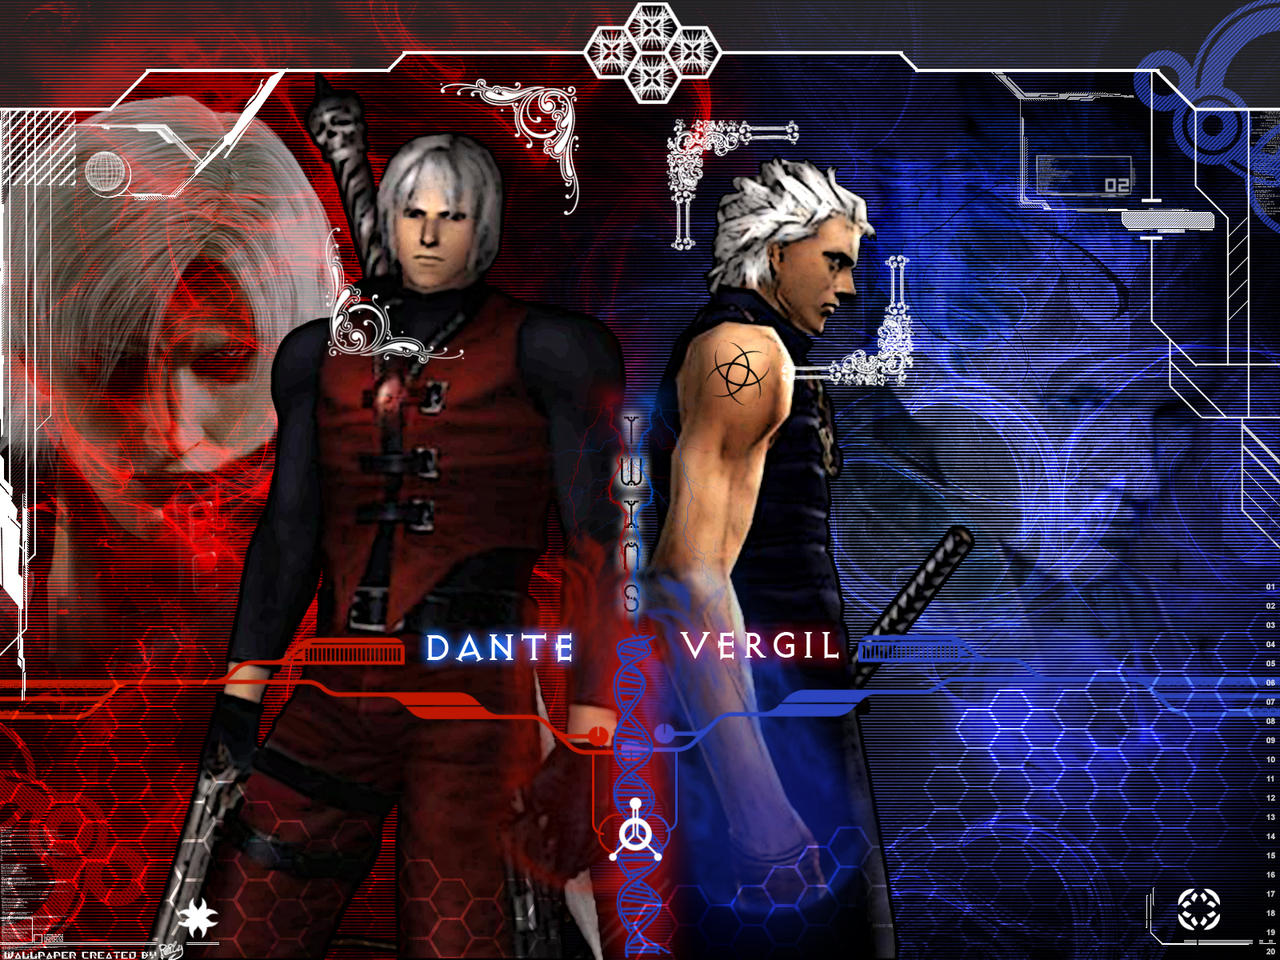 DMC4: Dante: the devil in me by MasamuneRevolution on DeviantArt